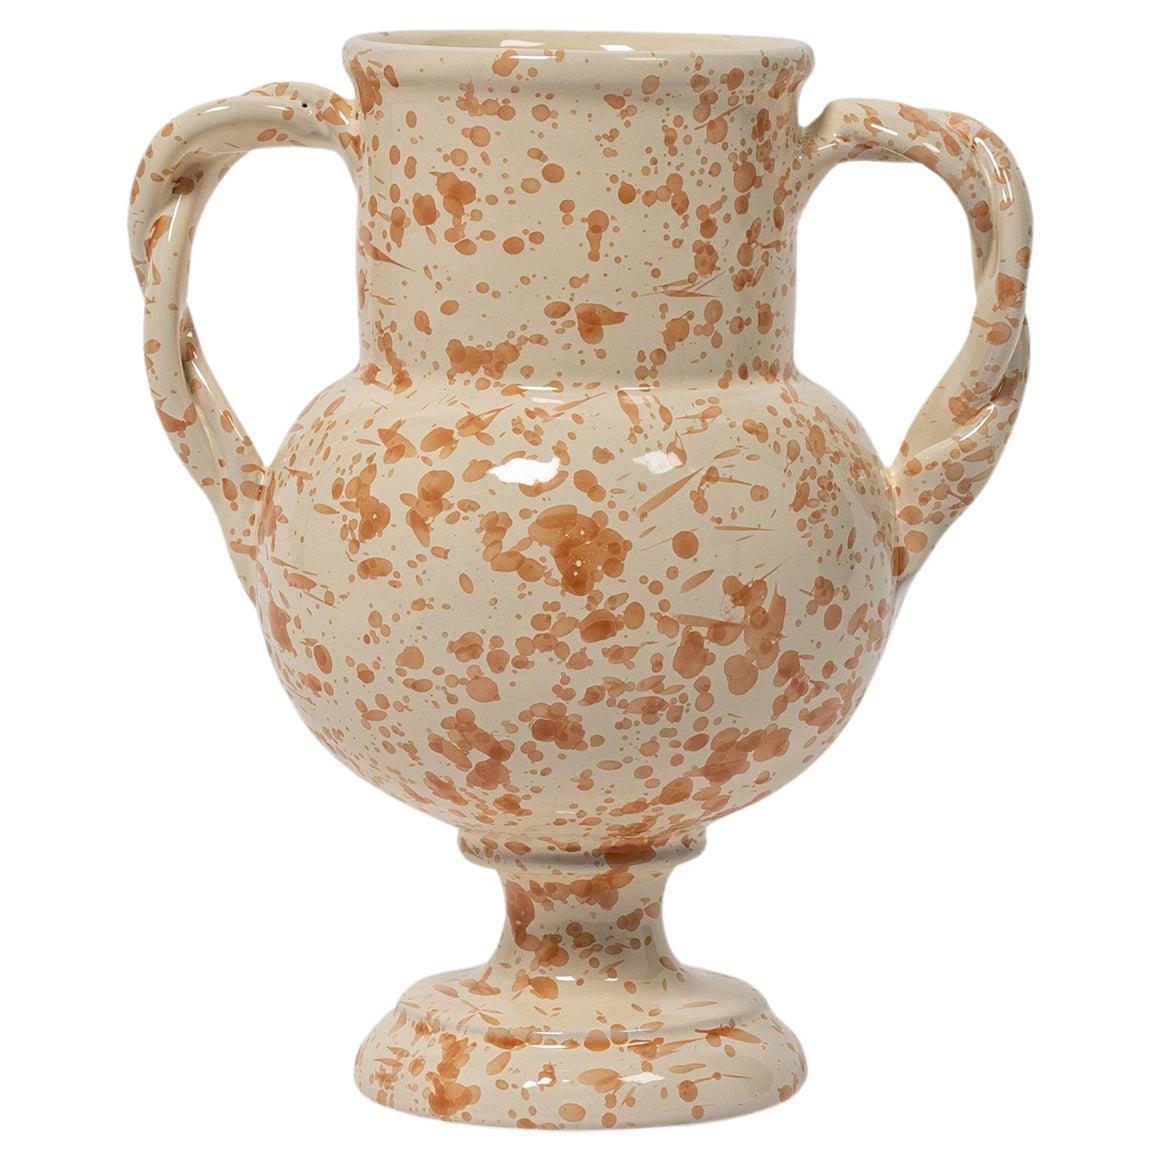 Splatter Vase, Handmade Ceramic Vase, Greek Urn Inspired, Tan & Ivory